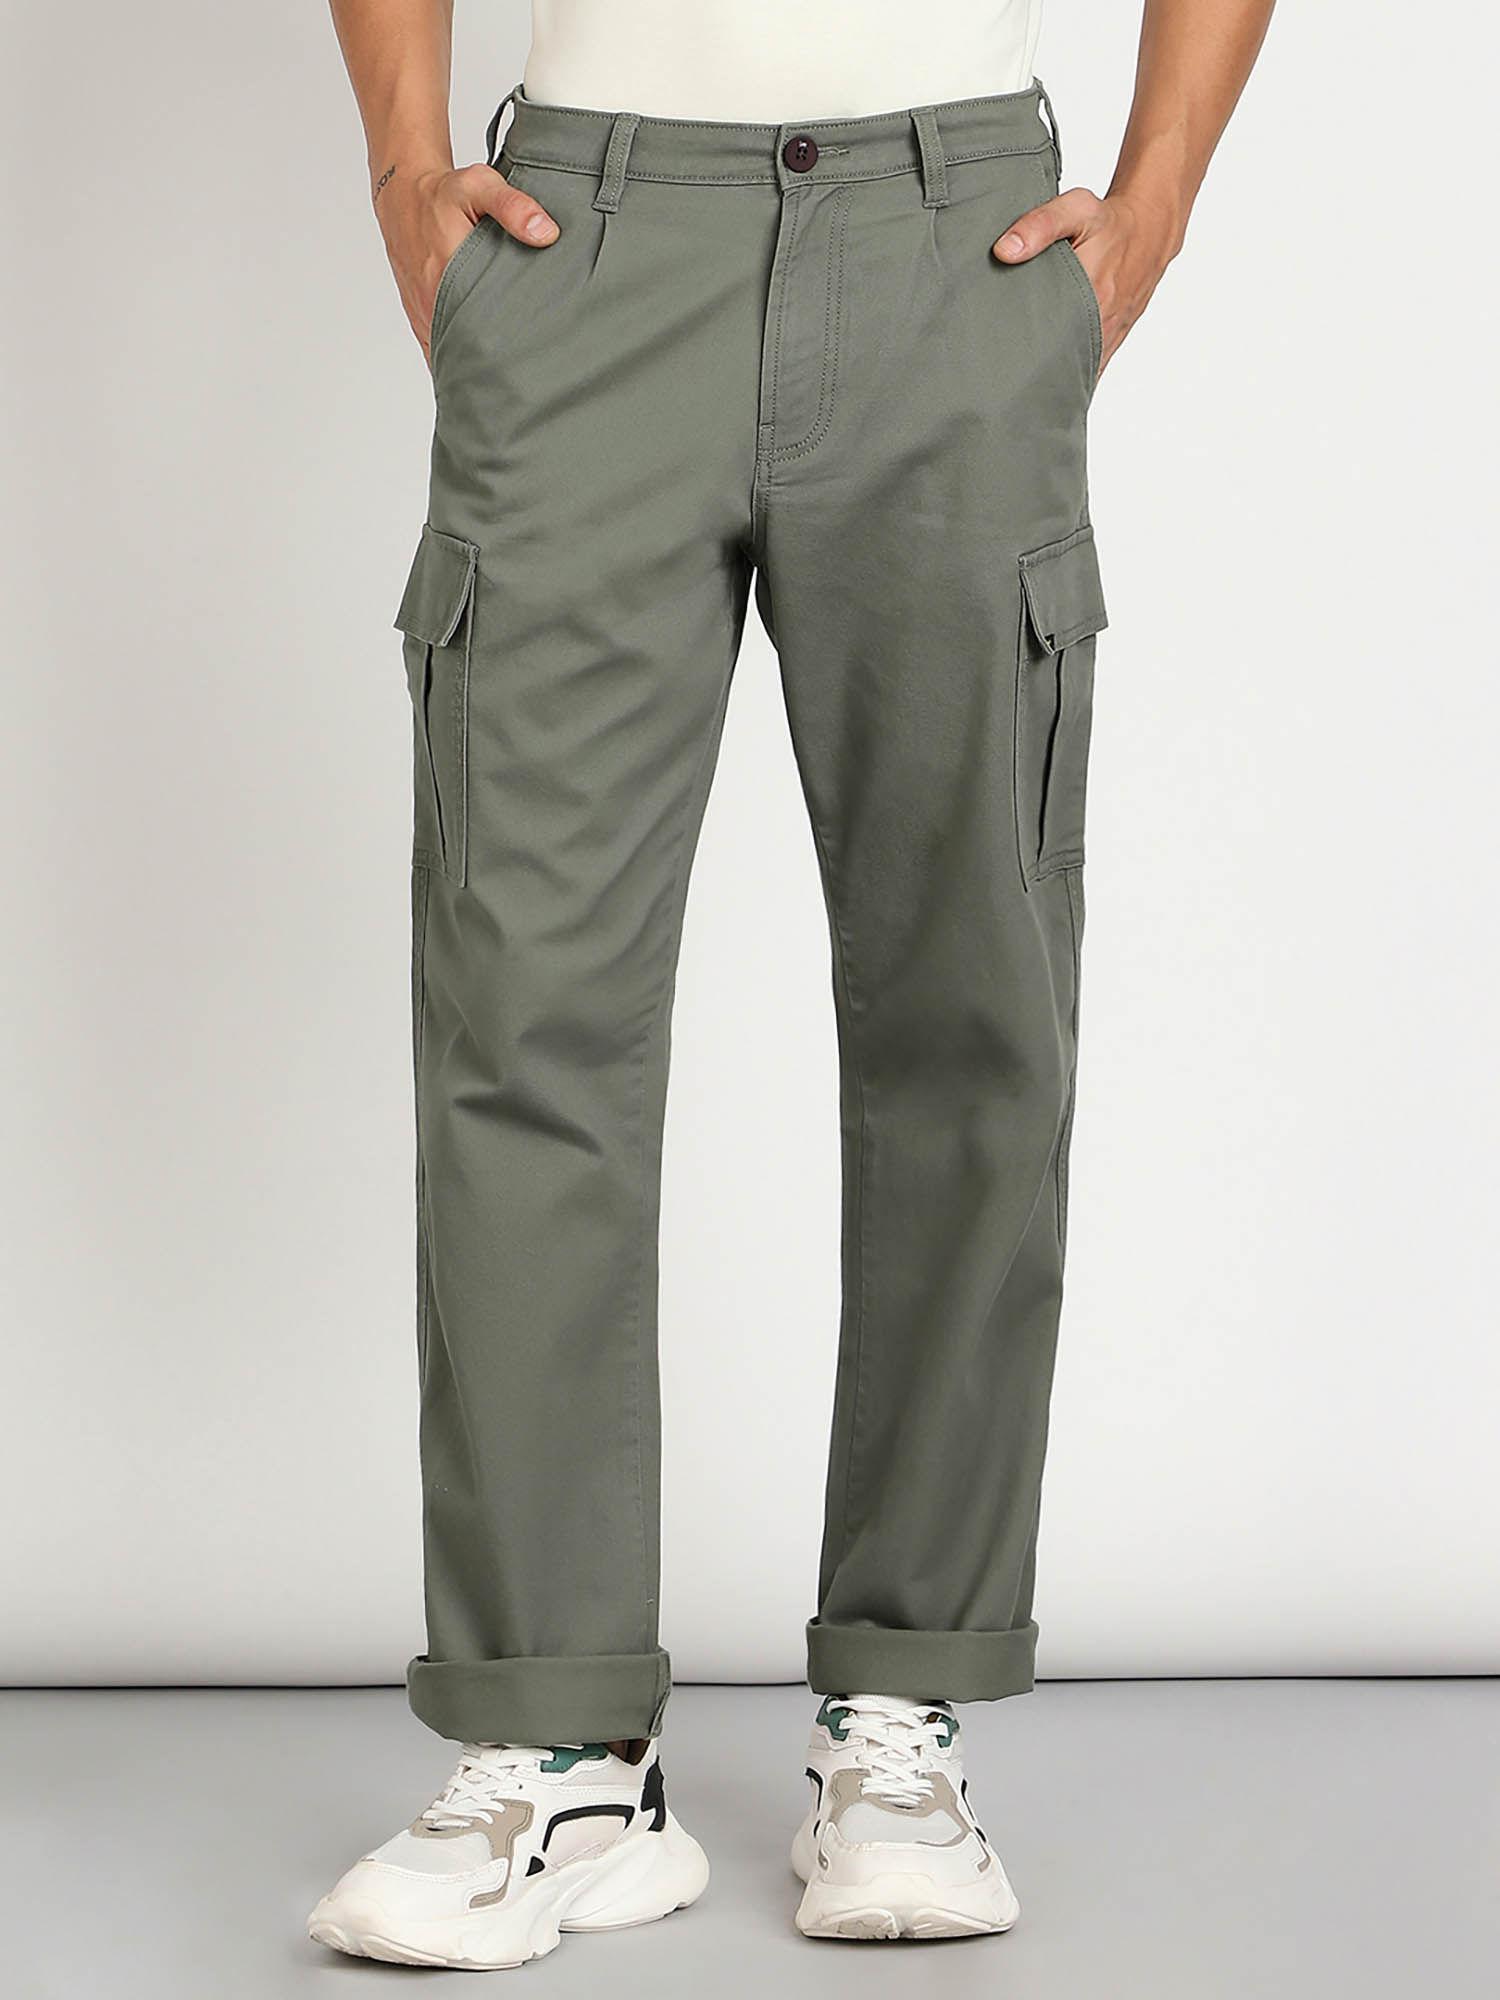 men's green cargo trouser